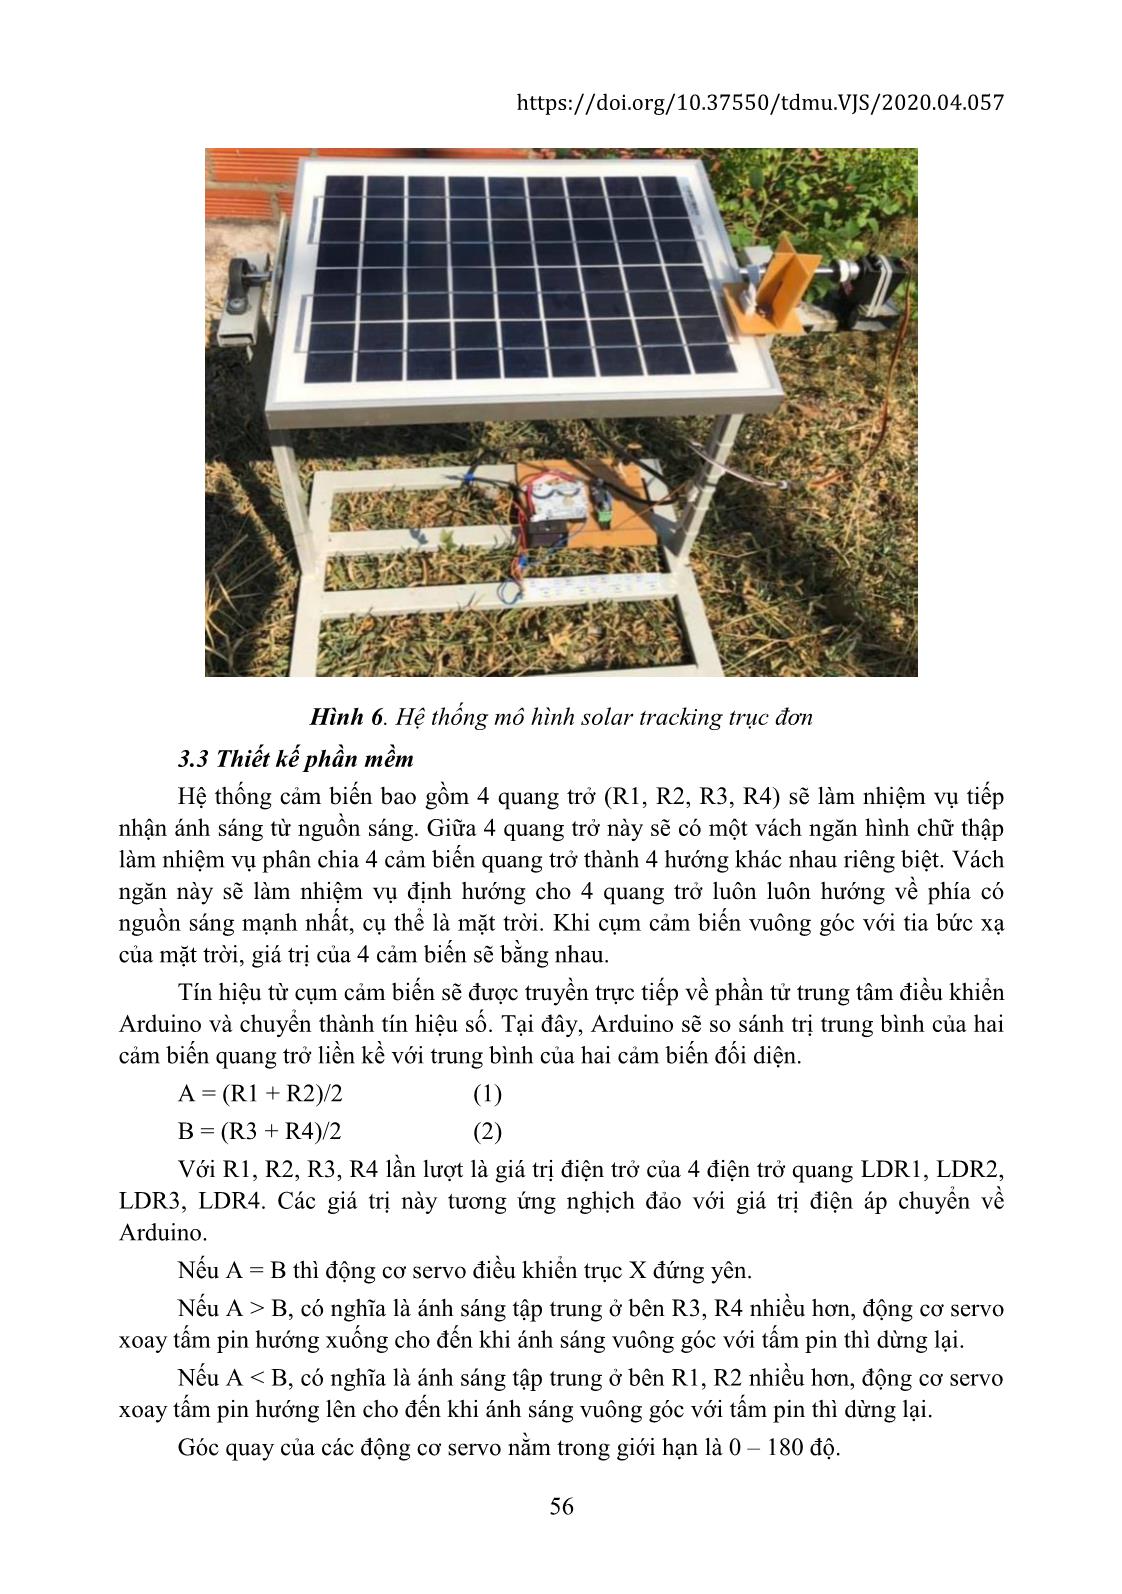 Đánh giá hiệu suất của hệ thống Solar Tracking trục đơn sử dụng quang trở trang 6